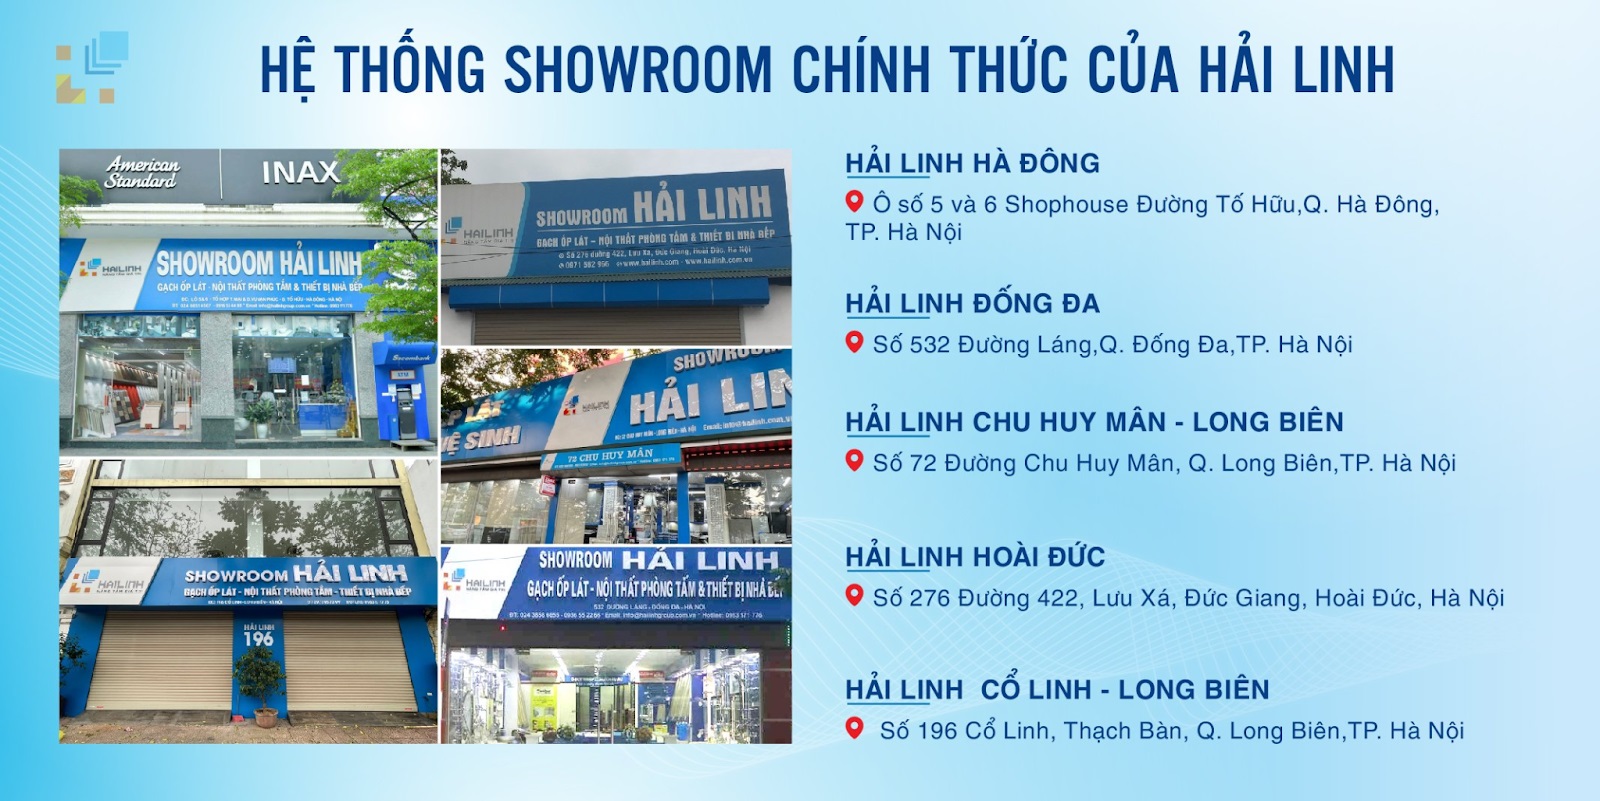 He thong showroom Hai Linh